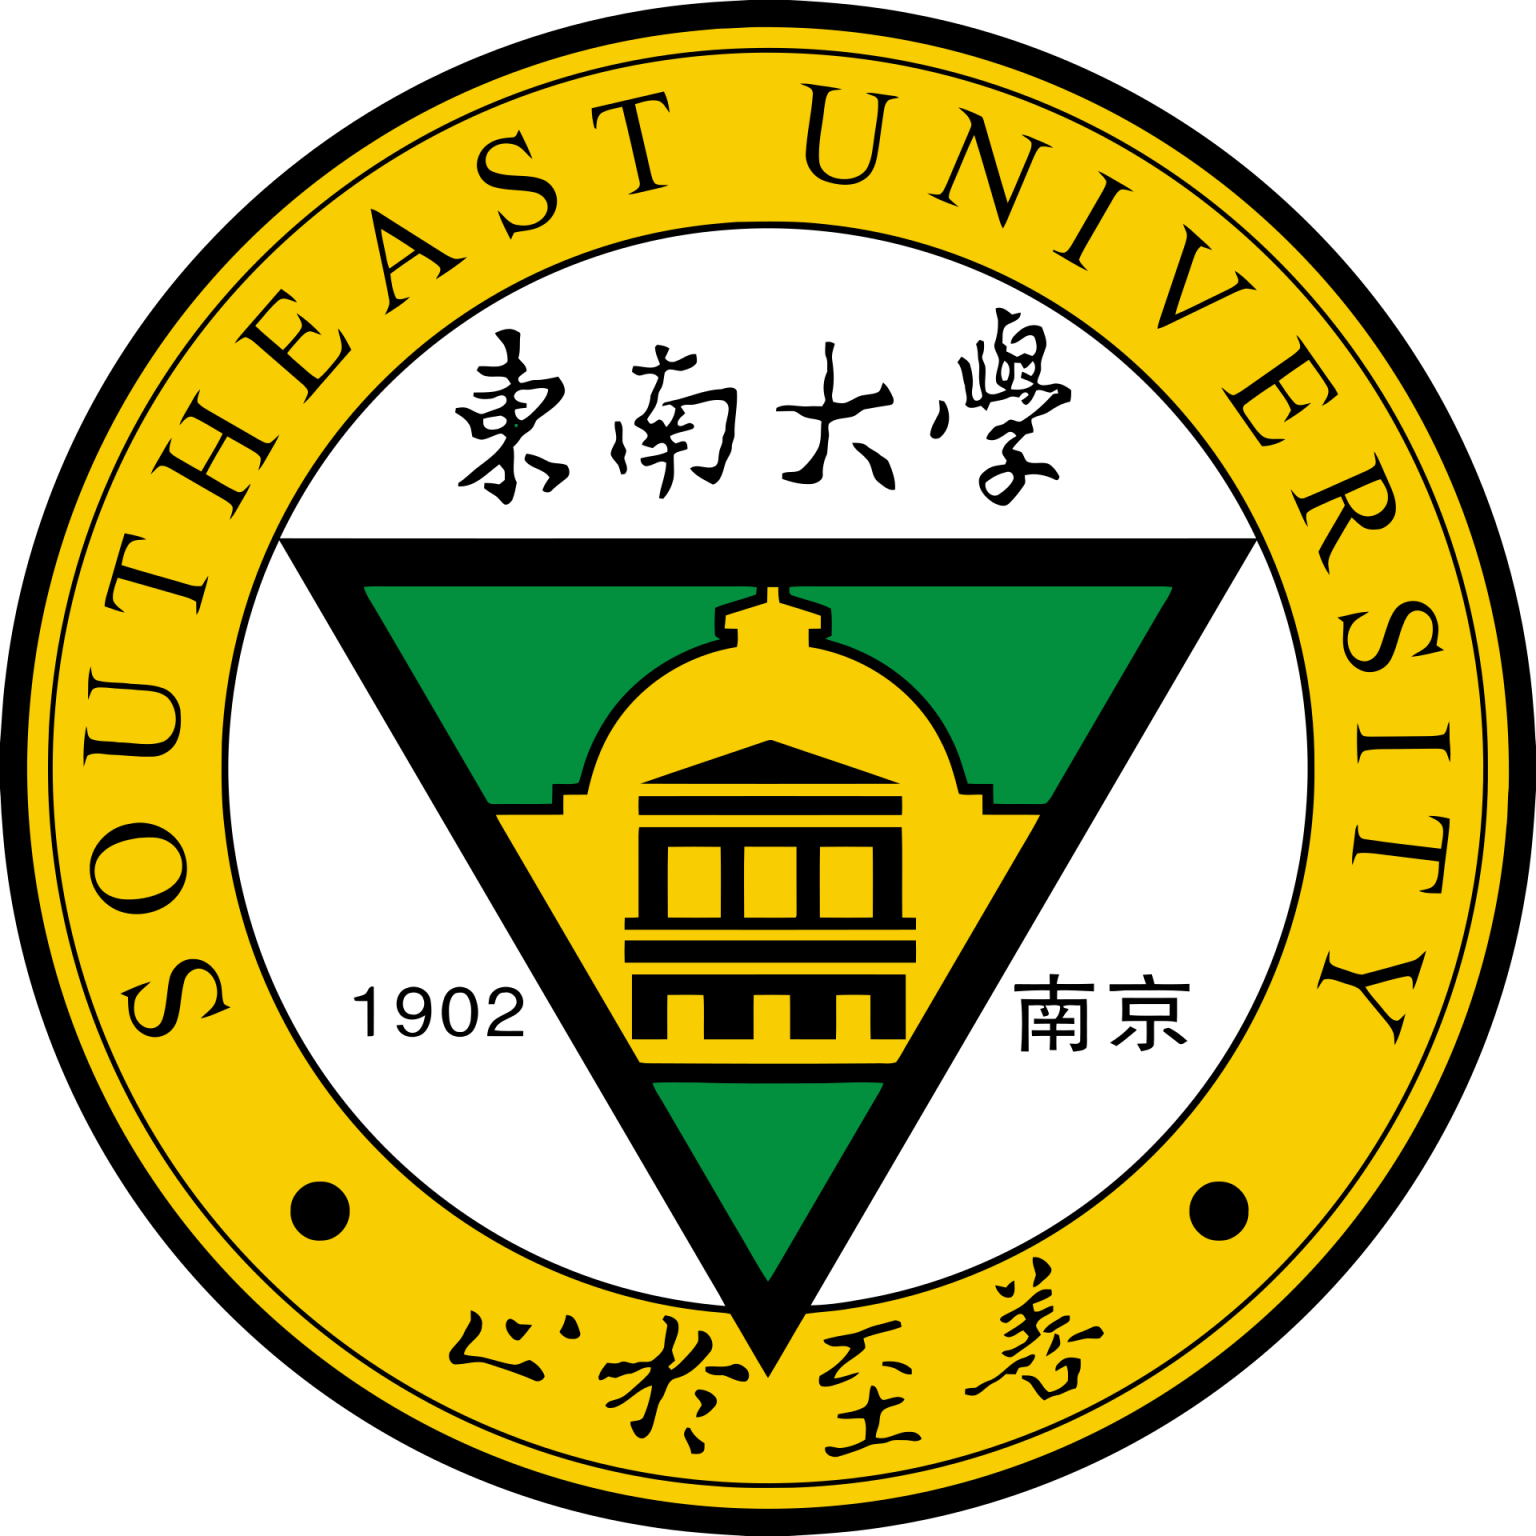 لوگوی دانشگاه جنوب شرقی چین